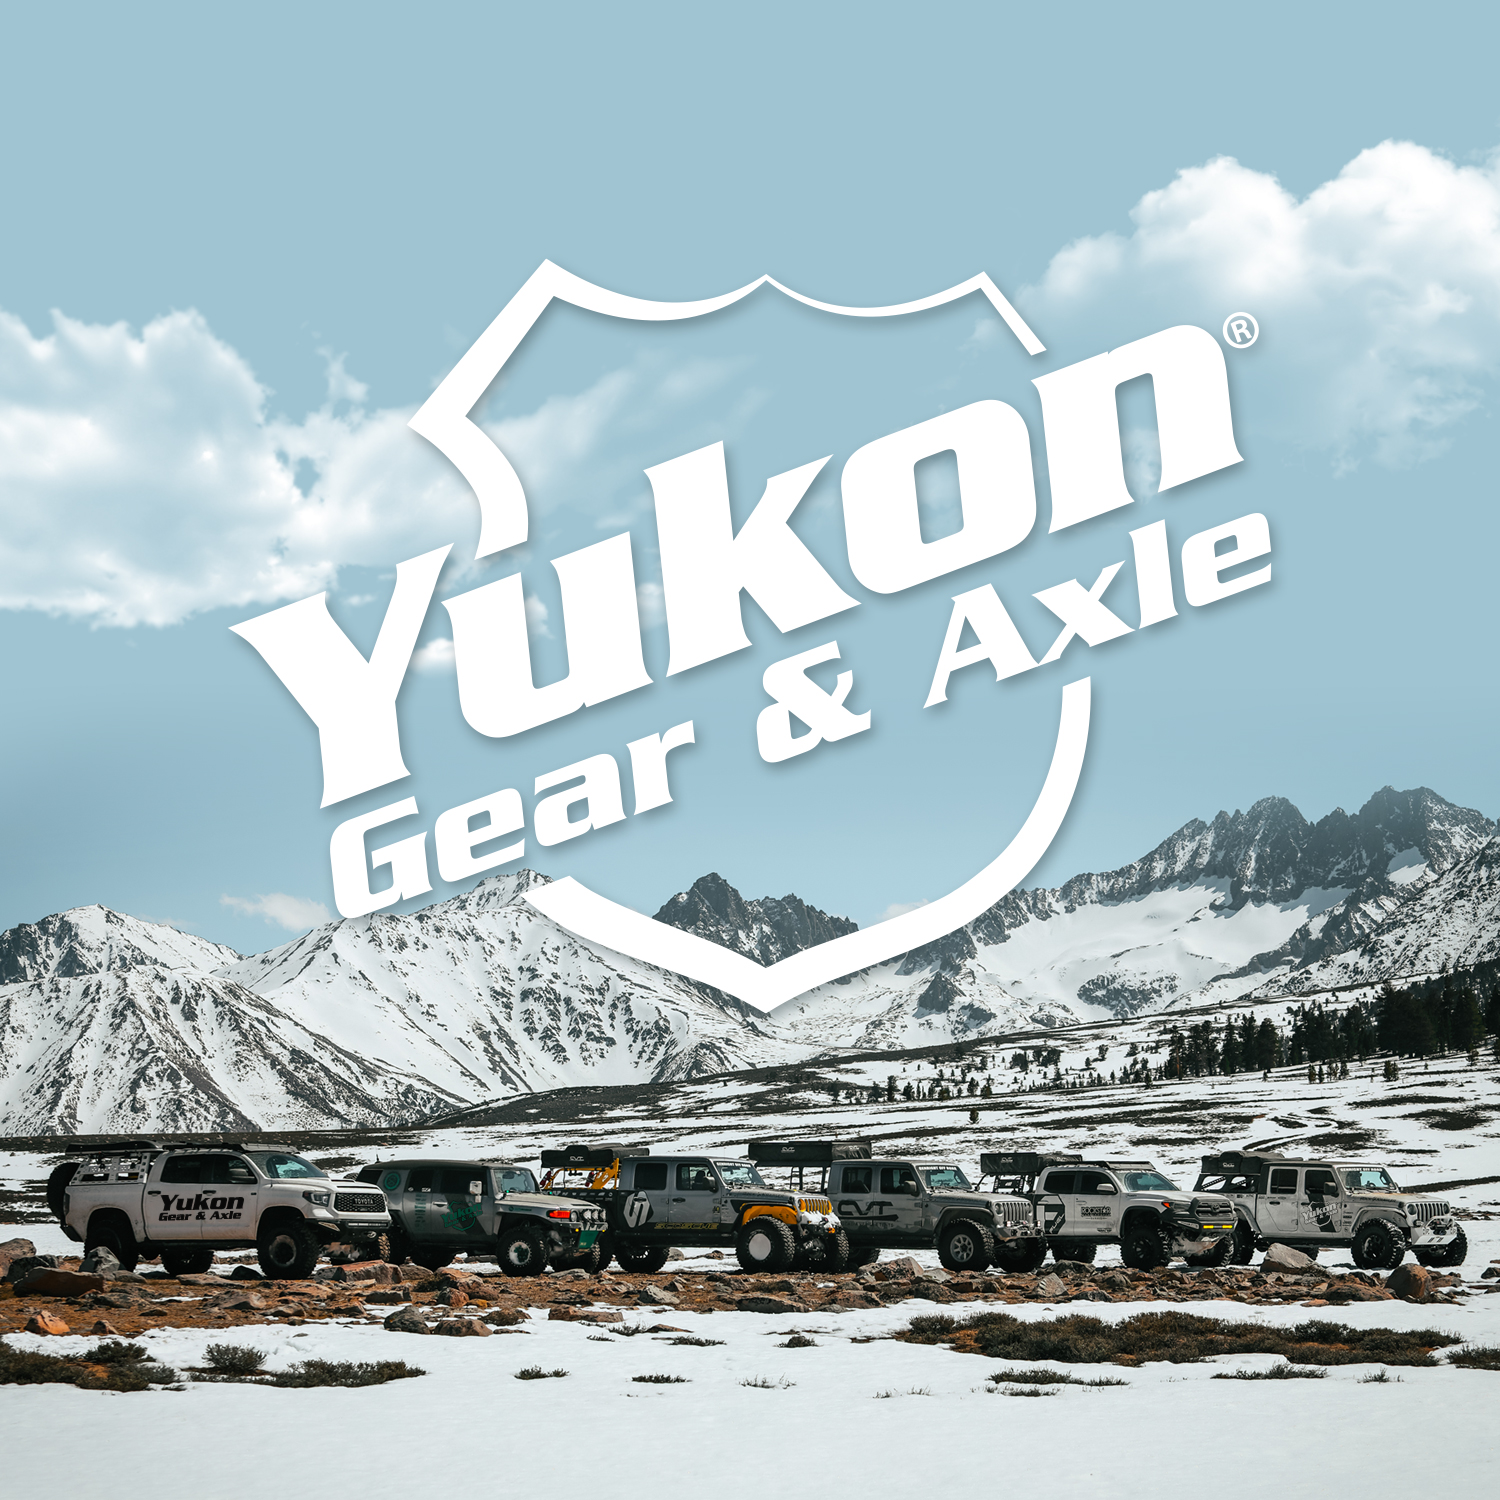 Yukon Trac Loc internals for 8" & 9" Ford, 31 spline, includes hub & clutches. 